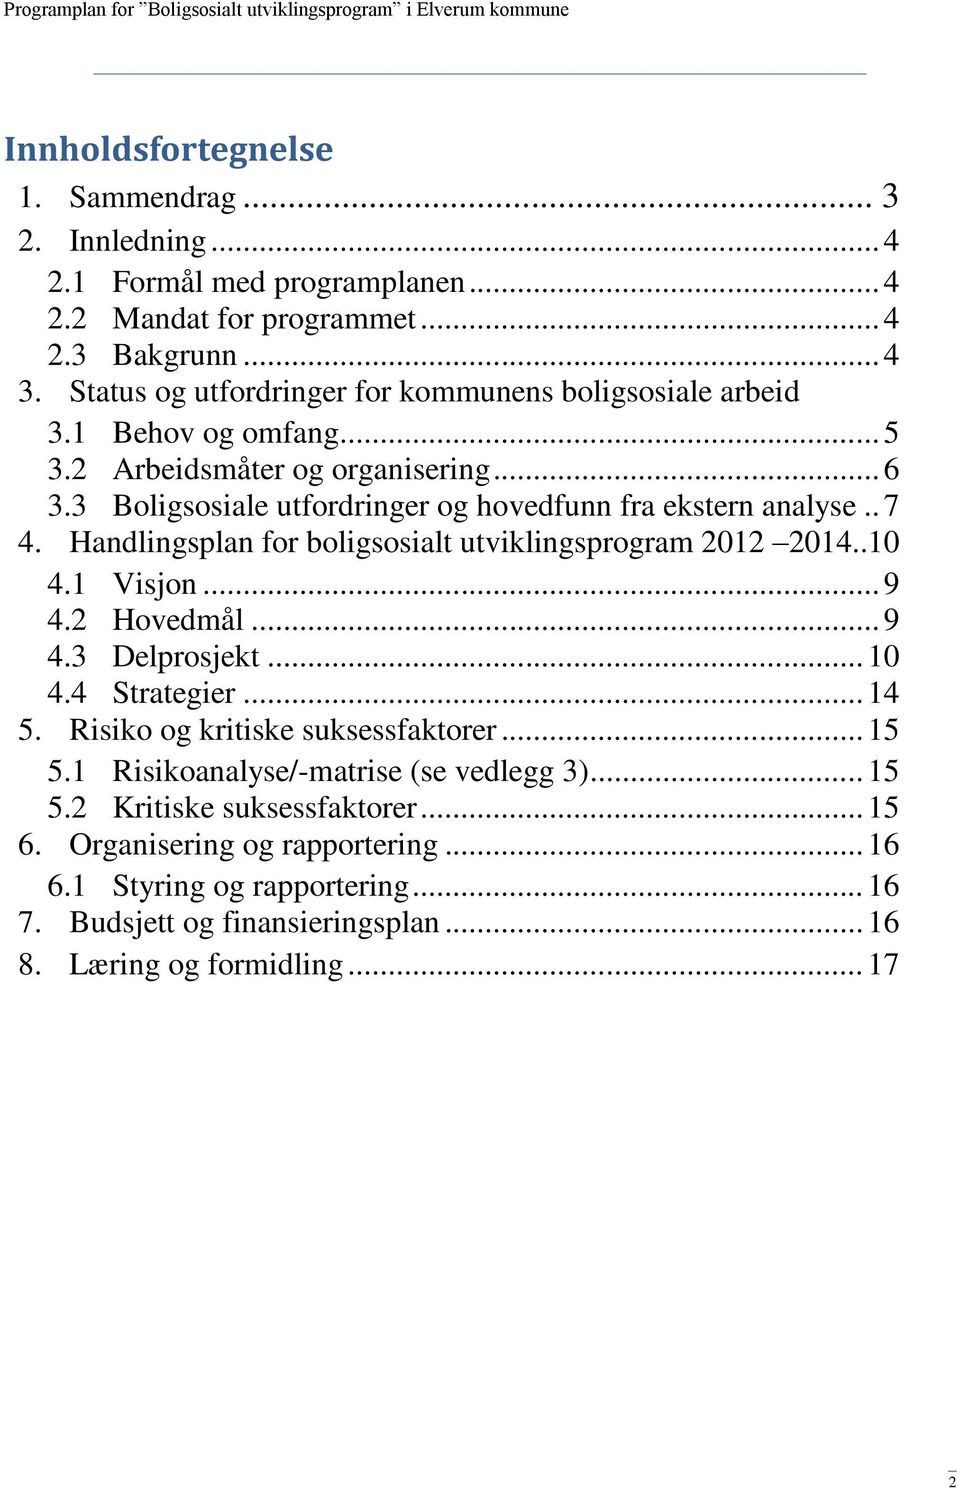 . 7 4. Handlingsplan for boligsosialt utviklingsprogram 2012 2014..10 4.1 Visjon... 9 4.2 Hovedmål... 9 4.3 Delprosjekt... 10 4.4 Strategier... 14 5. Risiko og kritiske suksessfaktorer.